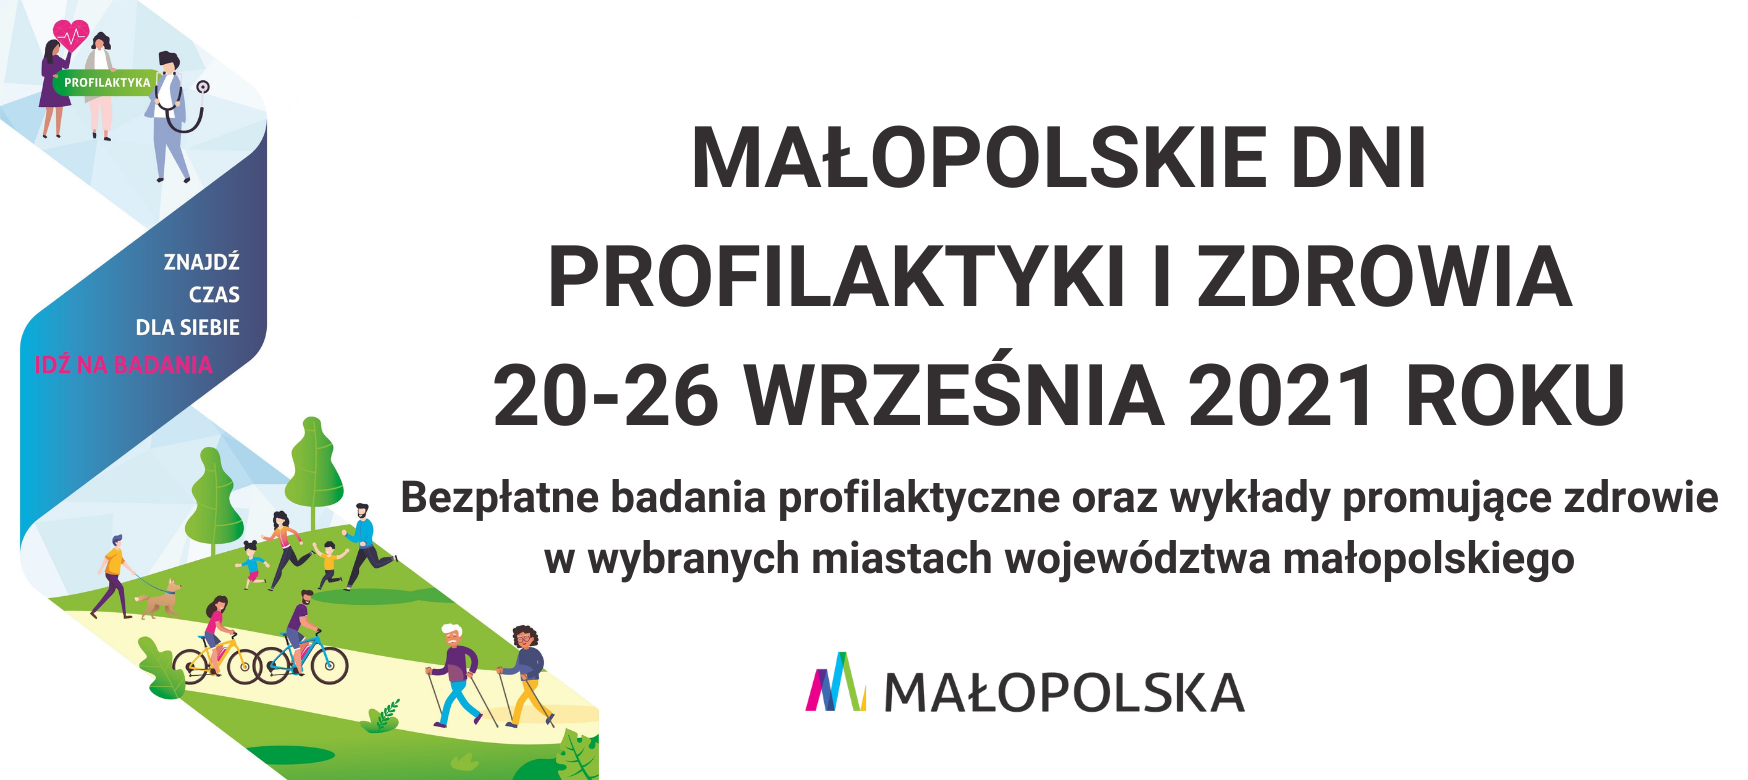 Małopolskie Dni Profilaktyki i Zdrowia w dniach 20-26 września 2021 r.